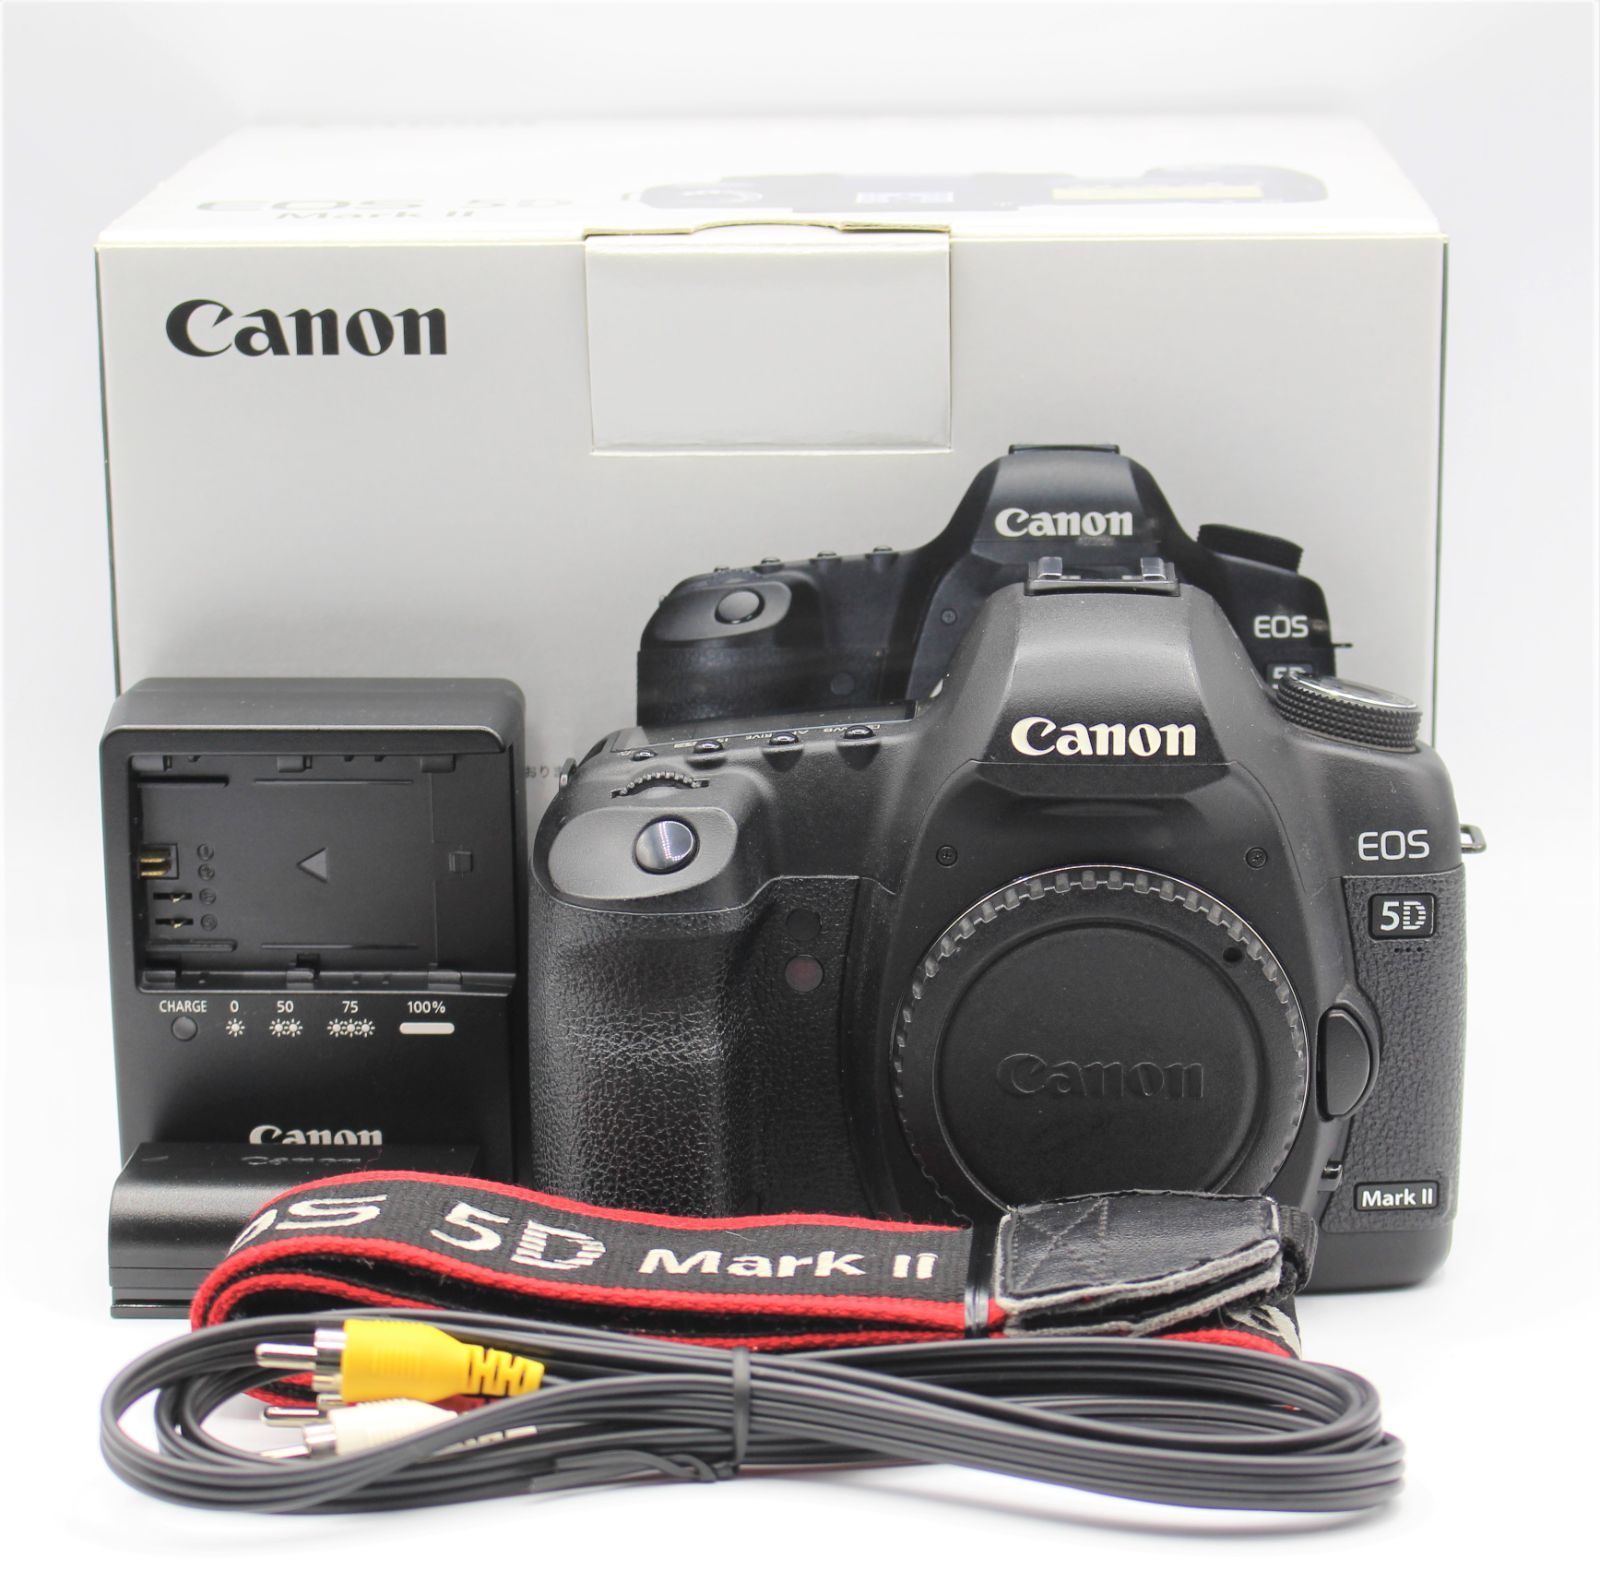 Canon デジタル一眼レフカメラ EOS 5D MarkII ボディ - 3